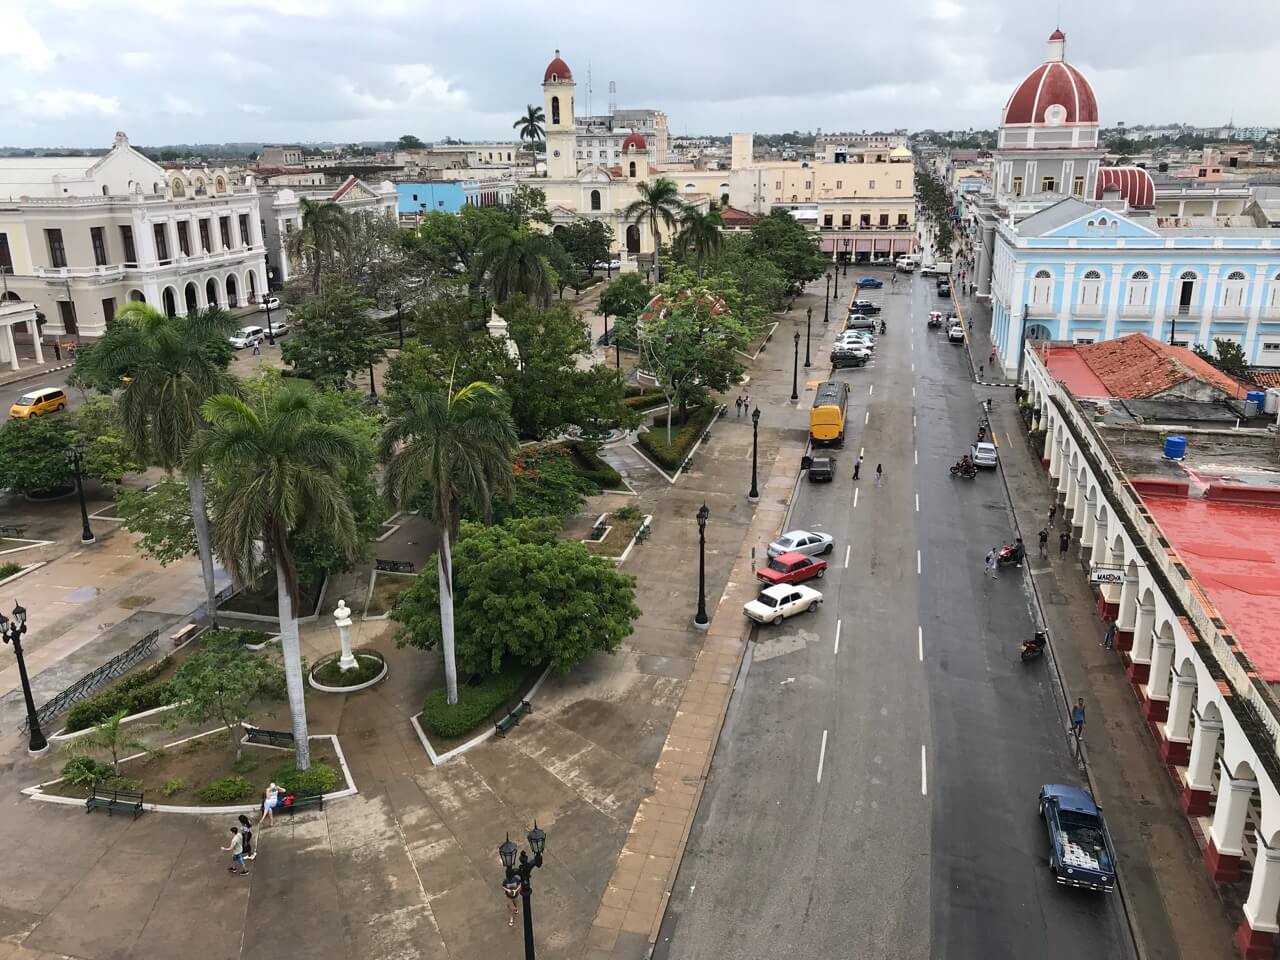 Cienfuegos main square, Cuba